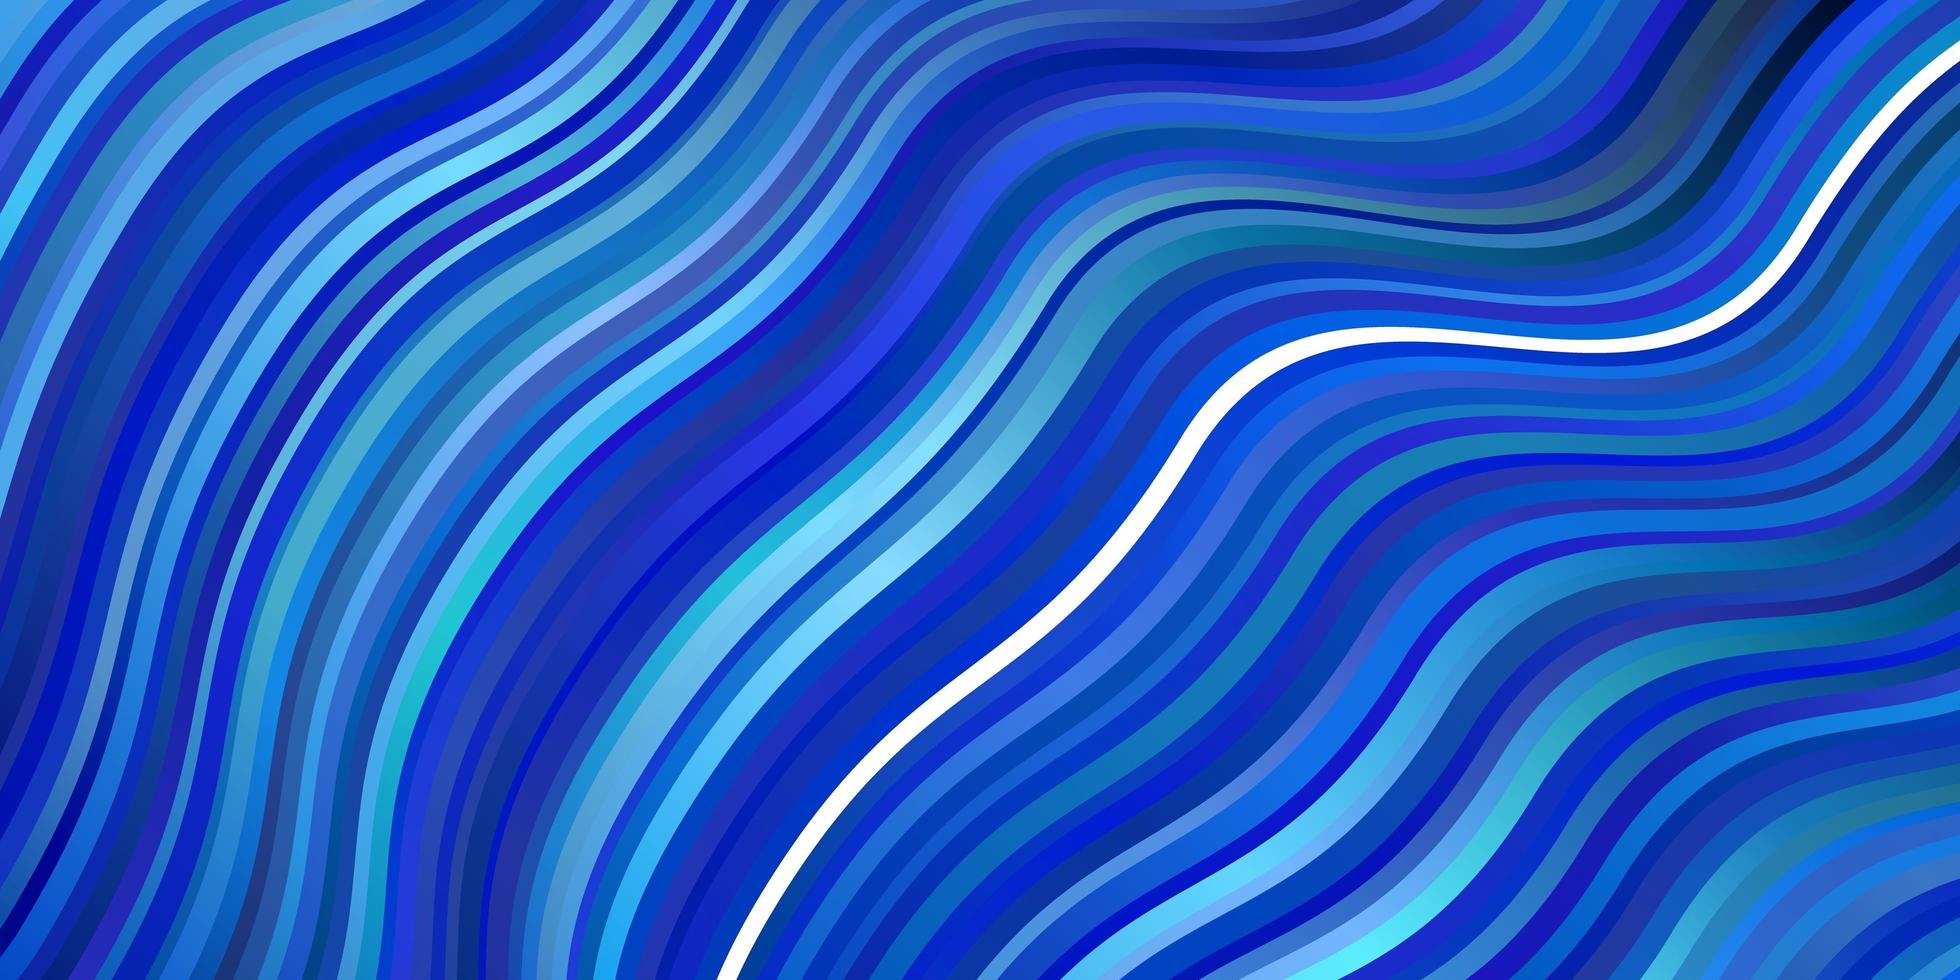 fundo vector azul claro com linhas curvas.